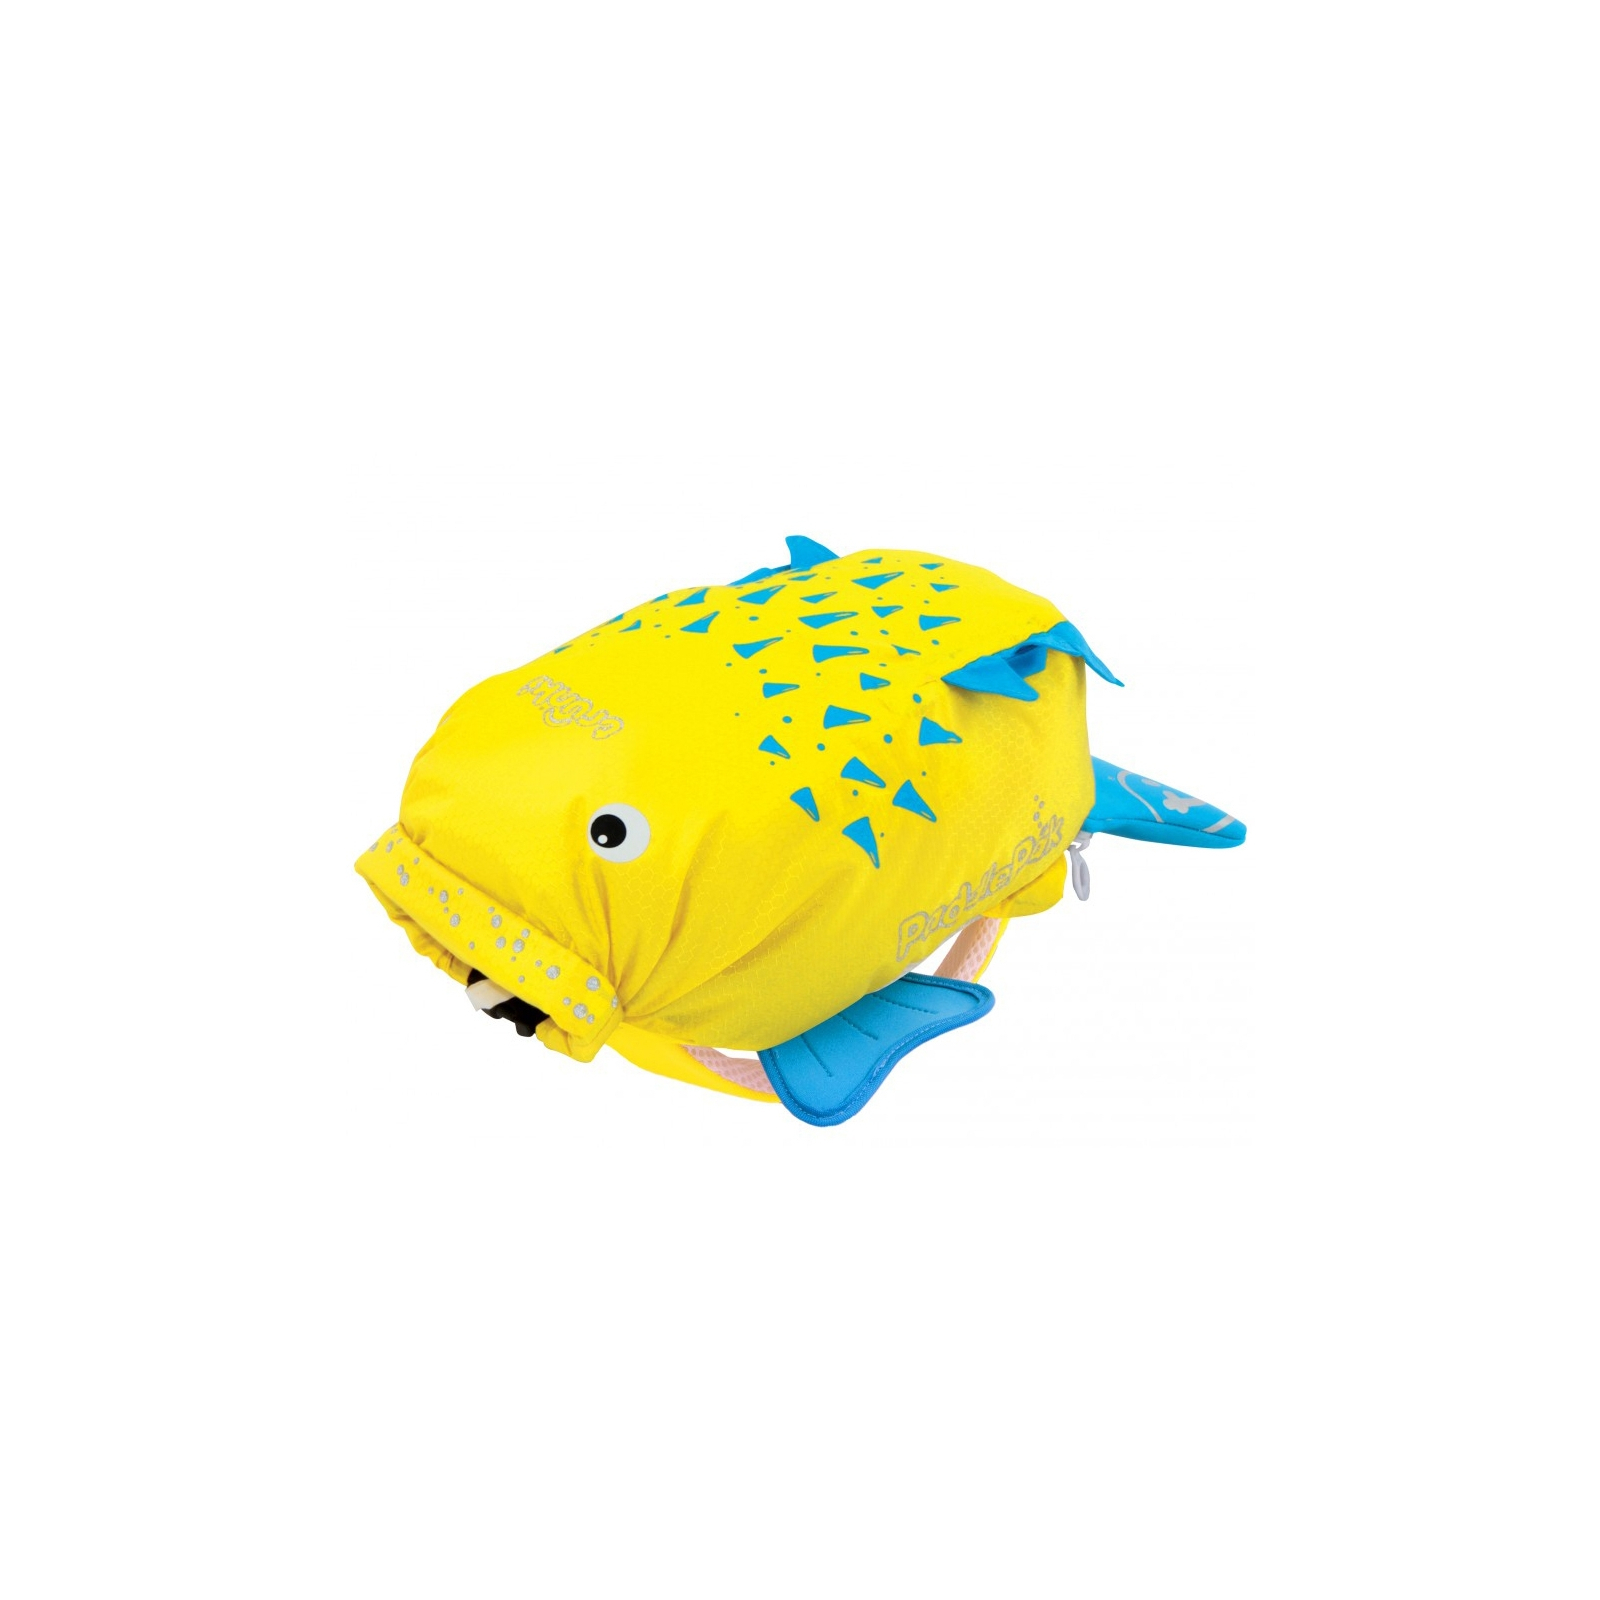 Рюкзак детский Trunki PaddlePak Рыбка Желтый (0111-GB01-NP) изображение 2